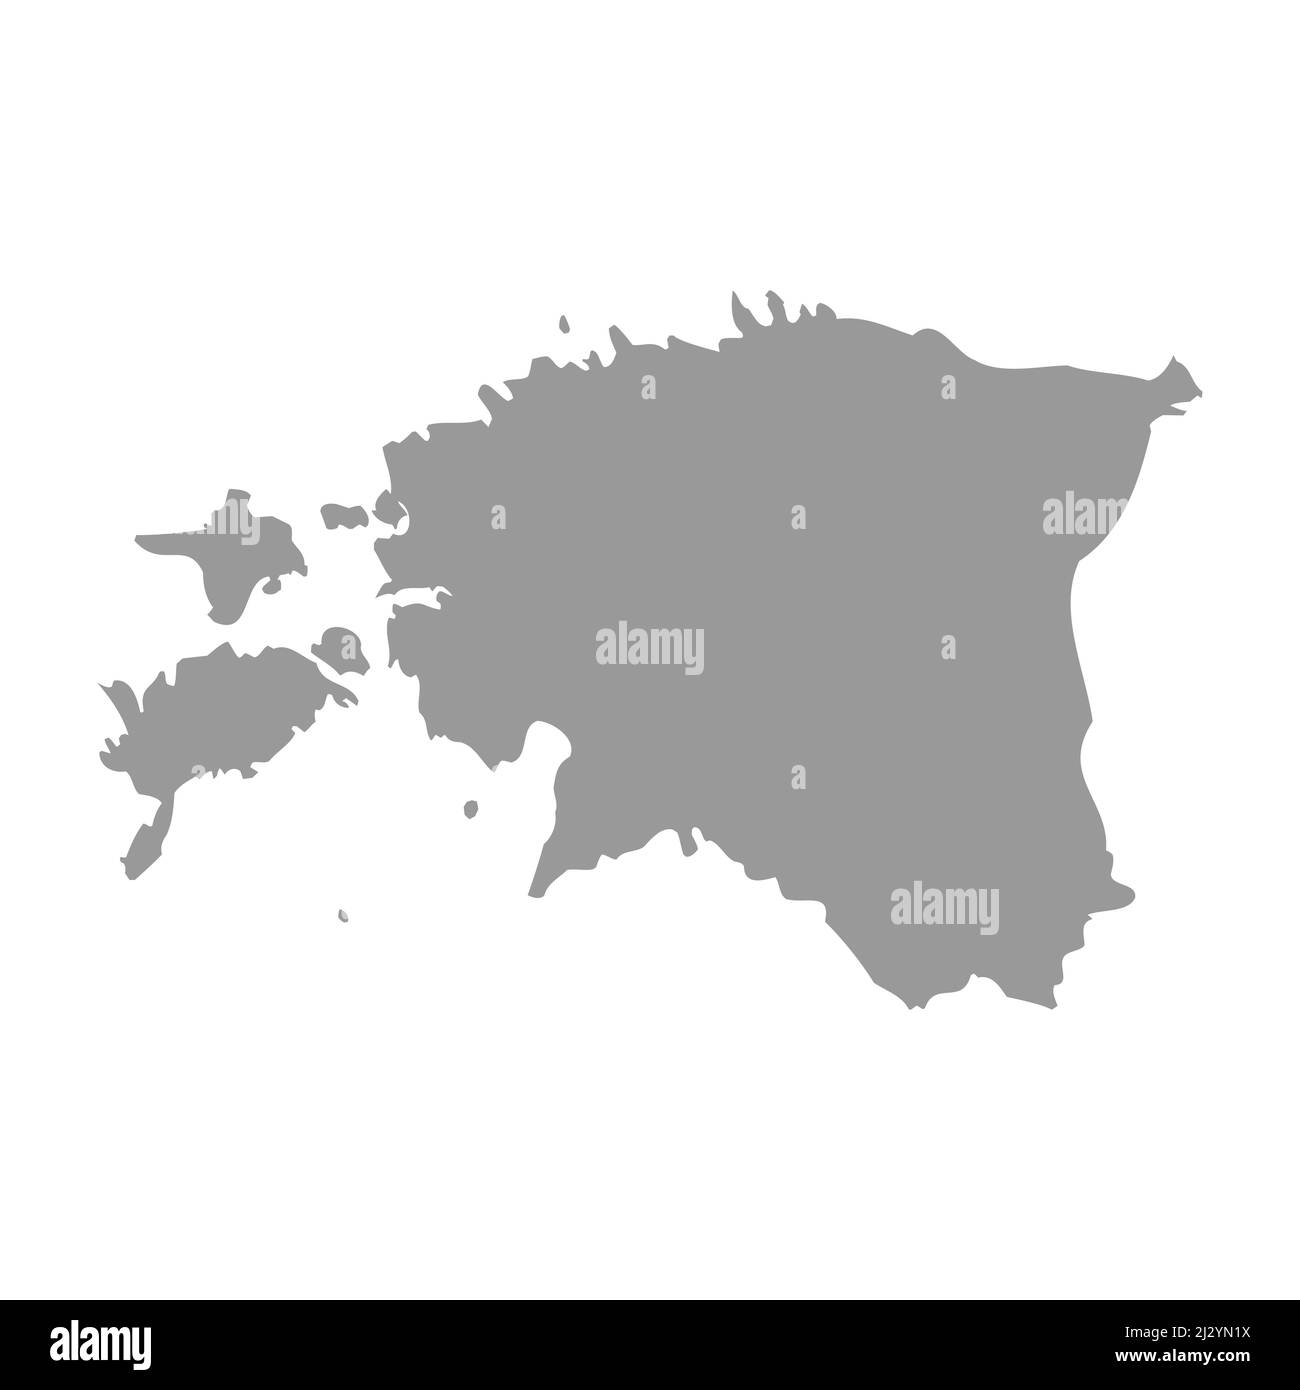 Estonia vector country map silhouette Stock Vector